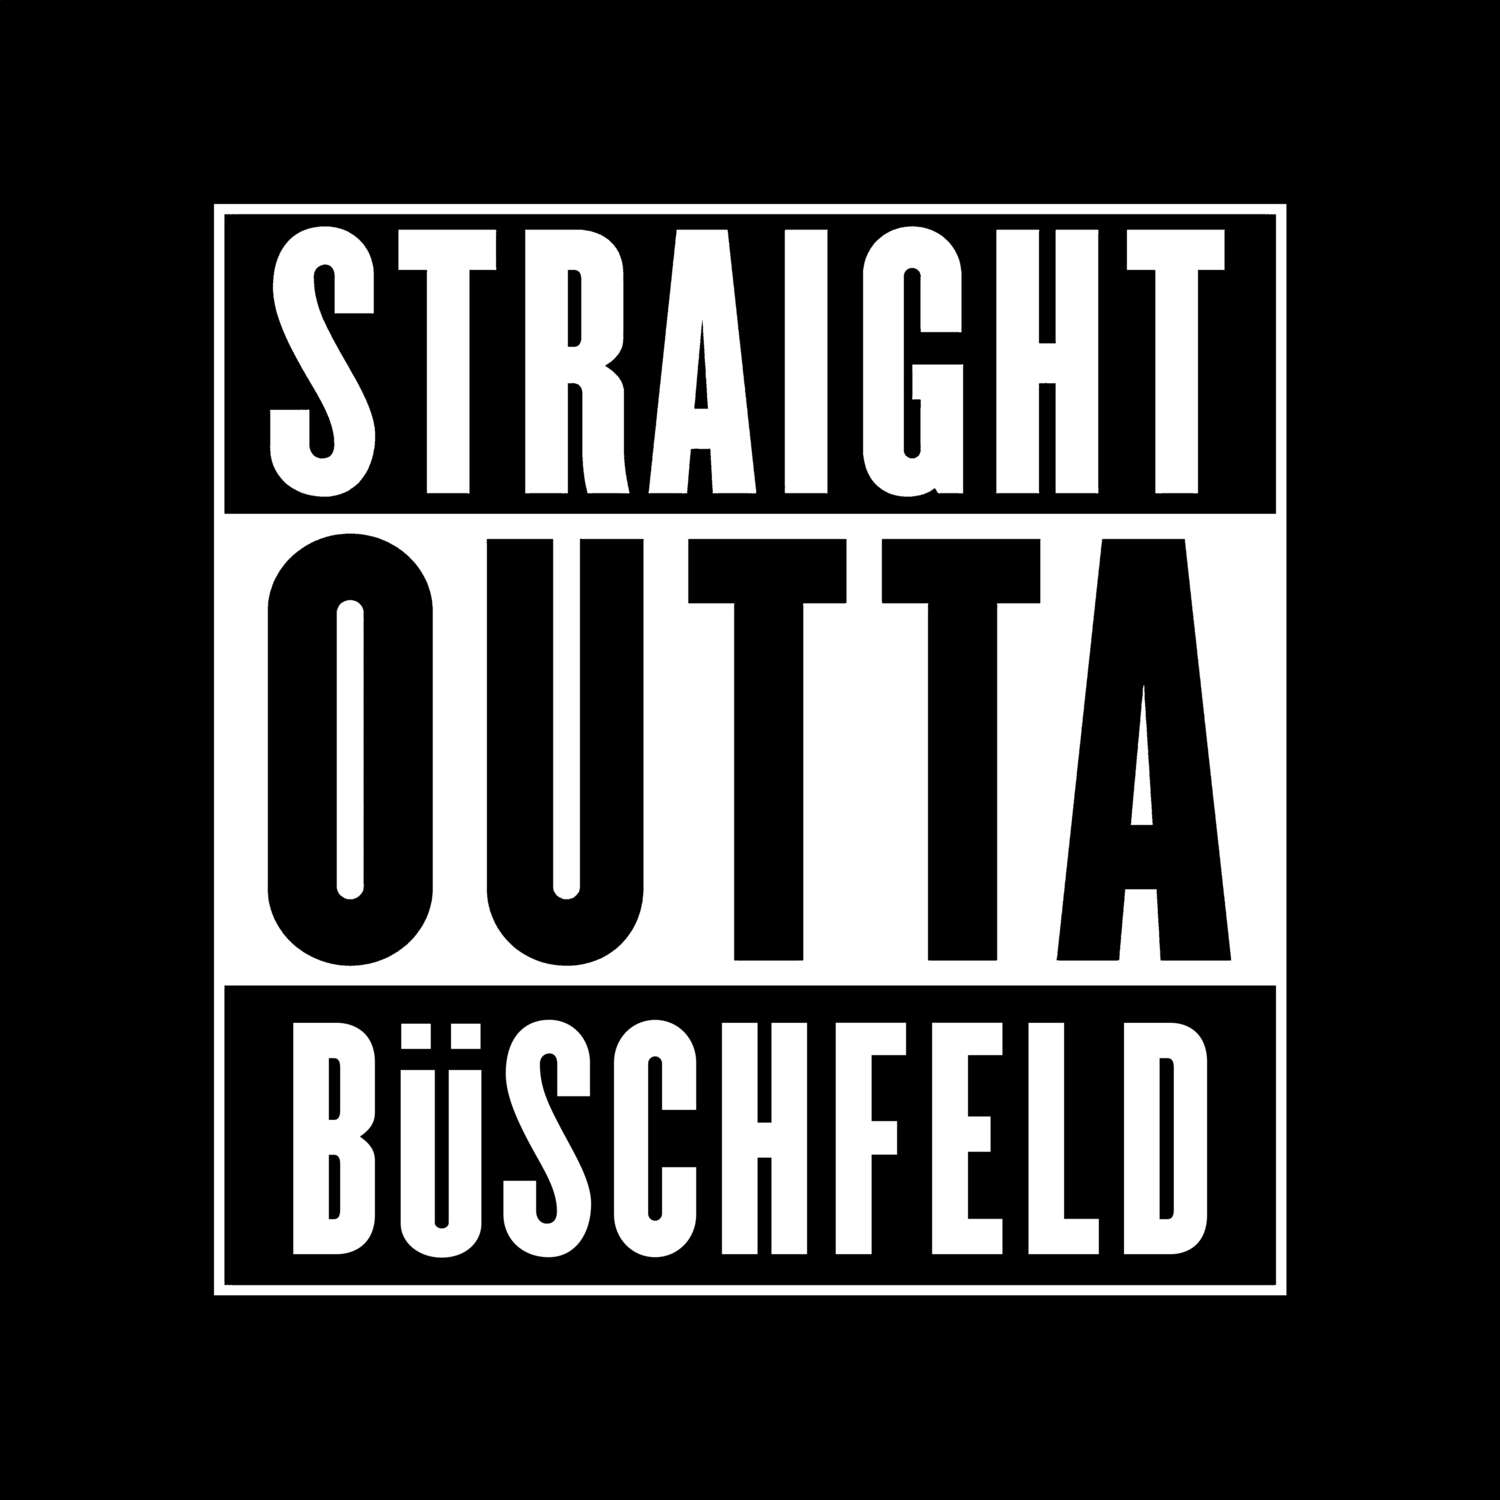 Büschfeld T-Shirt »Straight Outta«